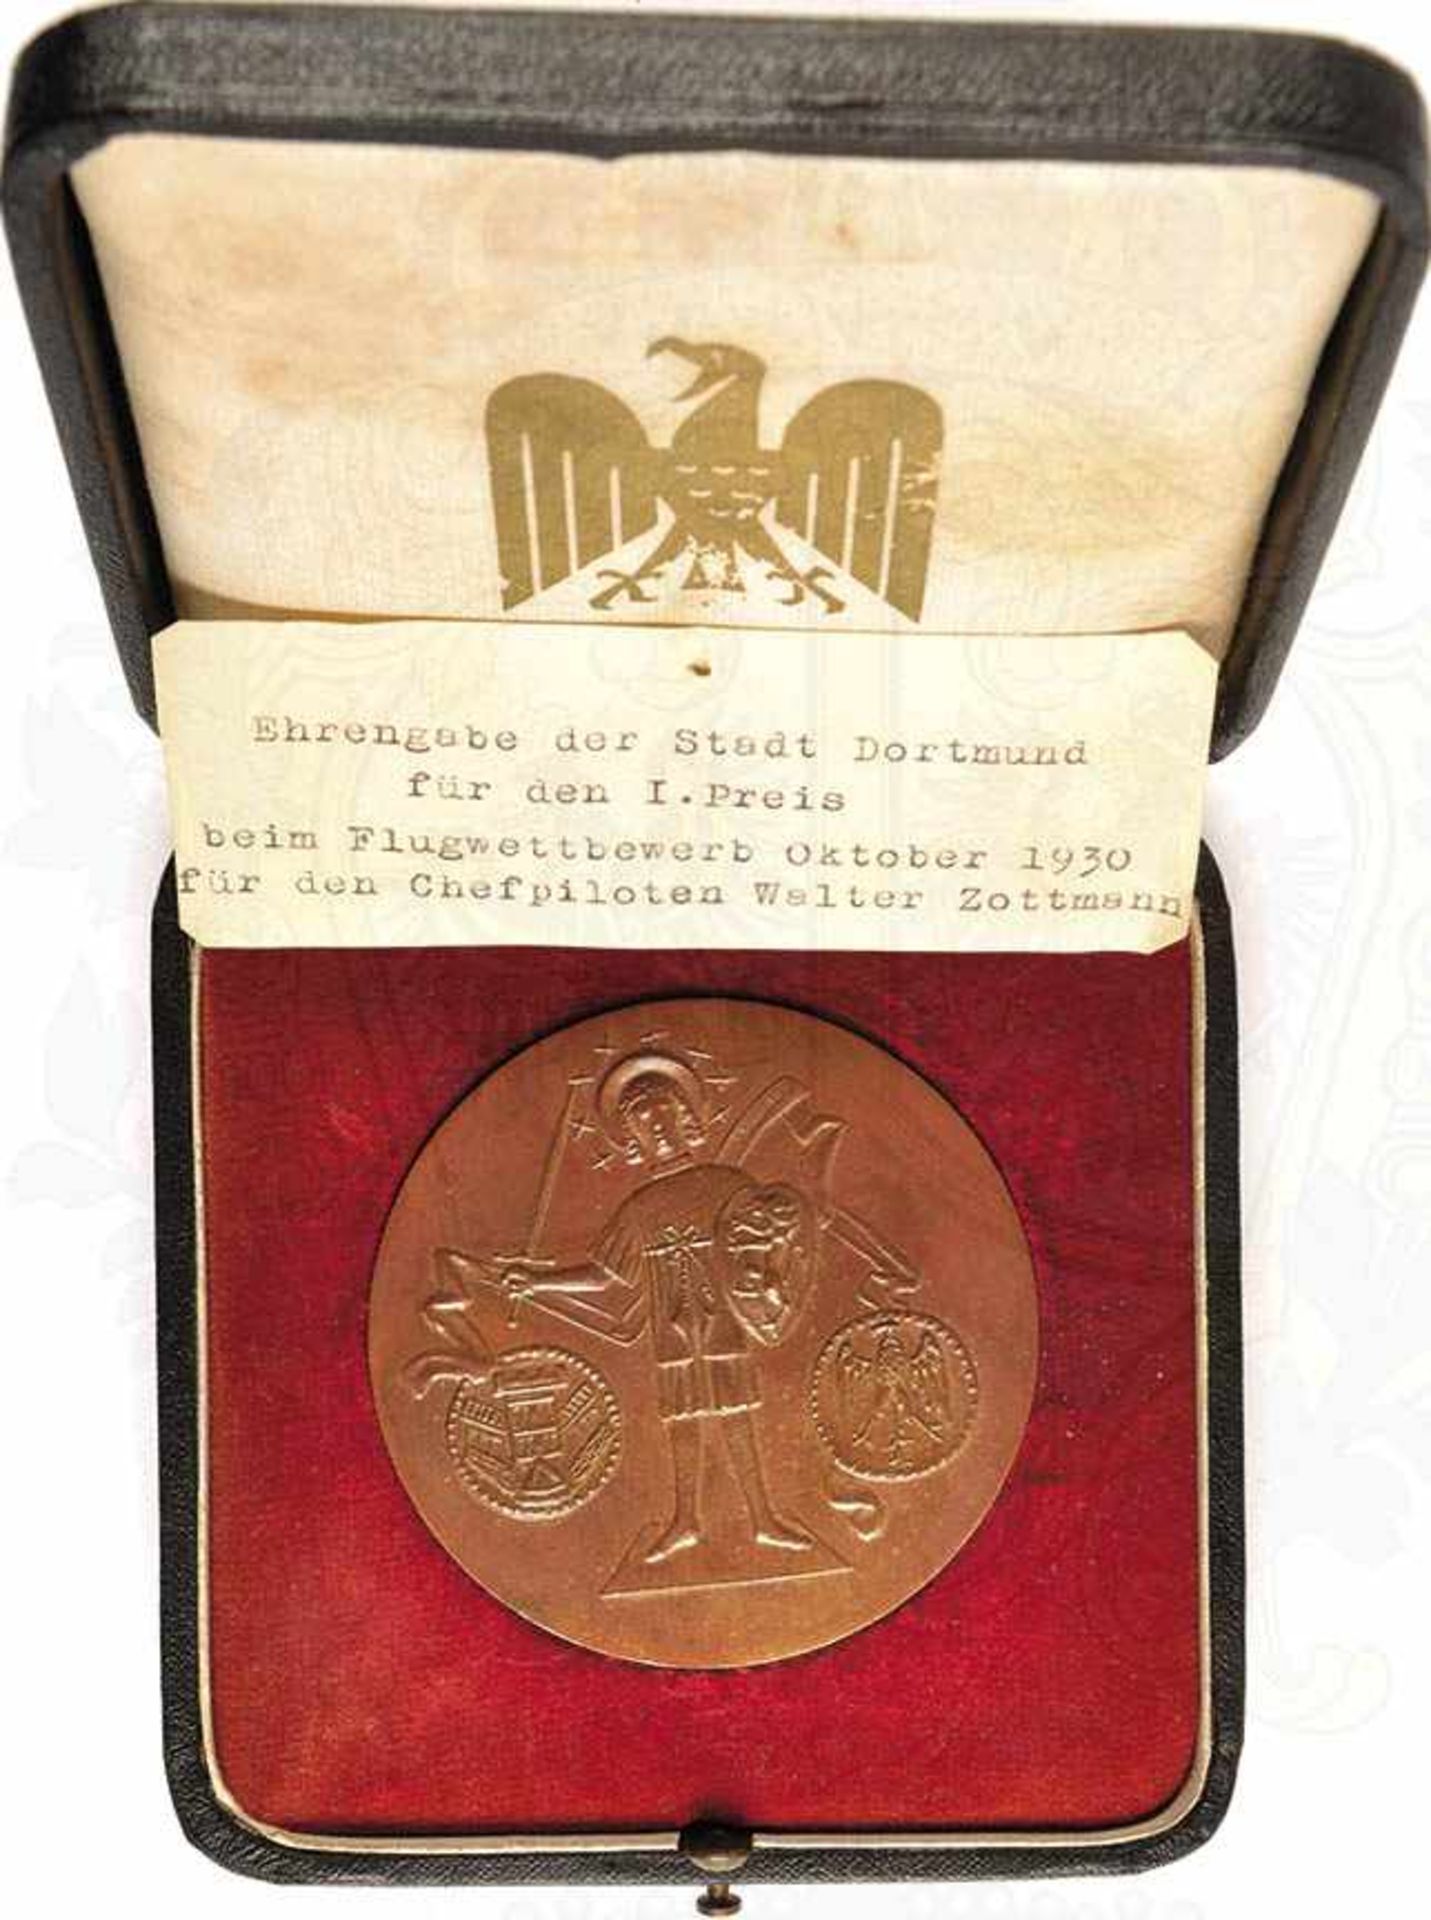 EHRENGABE DER STADT DORTMUND, Bronzemedaille m. Wappen, Reichsadler u. Heiligenfigur m. Schwert, Ø